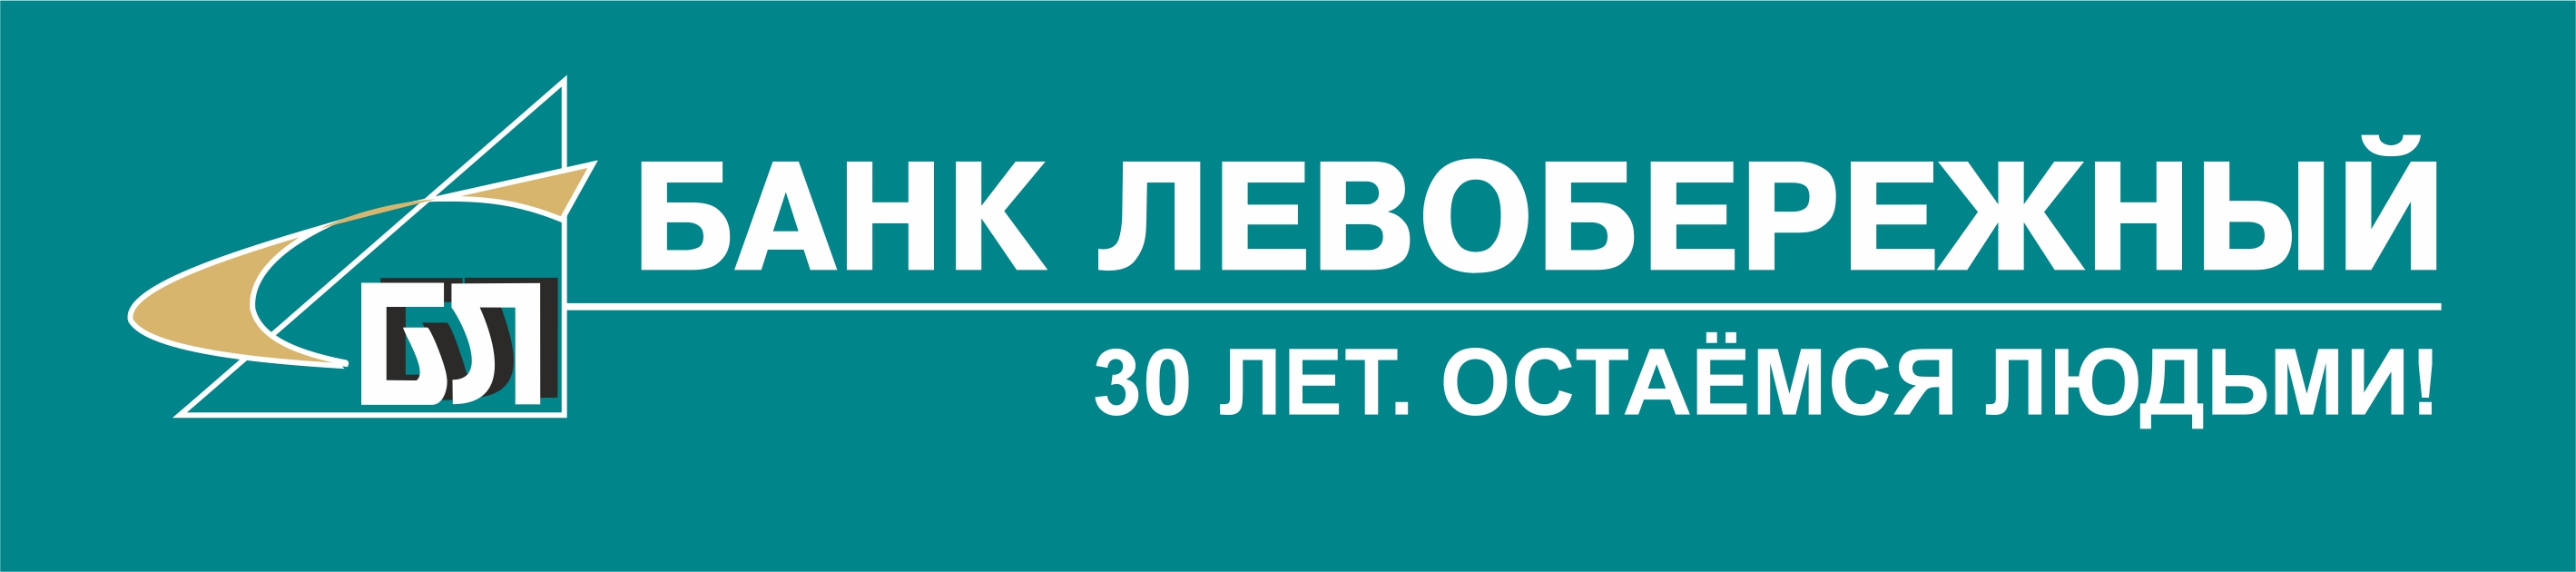 Банк левобережный кредитный. Банк Левобережный логотип. ПАО Левобережный, Новосибирский социальный коммерческий банк. Сайт банка Левобережный. Банк Левобережный логотип новый.